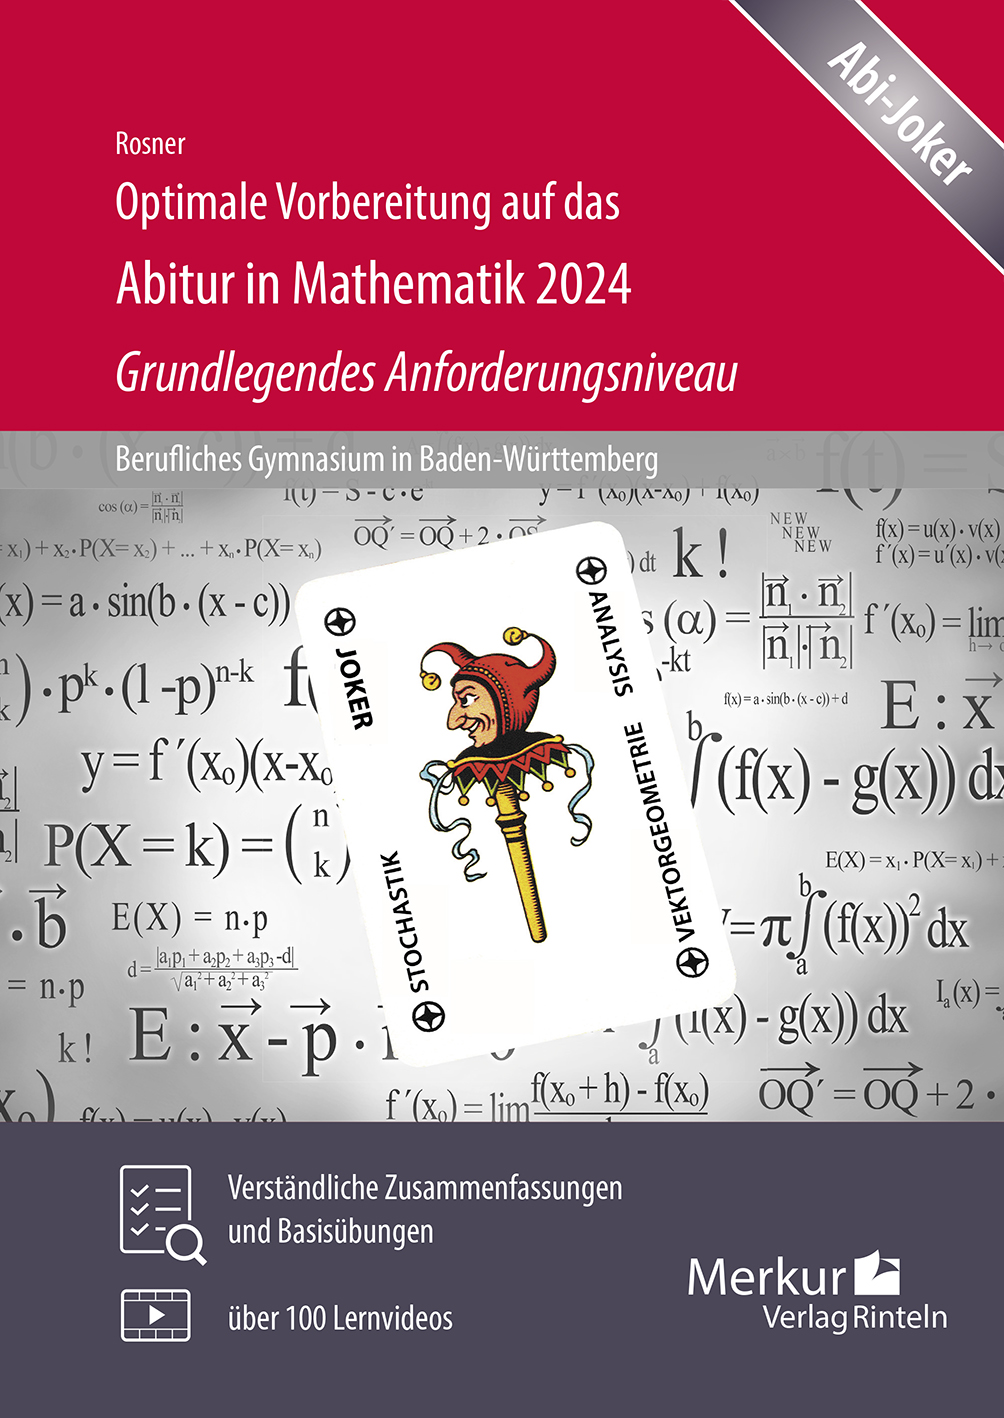 Optimale Vorbereitung auf das Abitur in Mathematik 2024 - Grundlegendes Anforderungsniveau